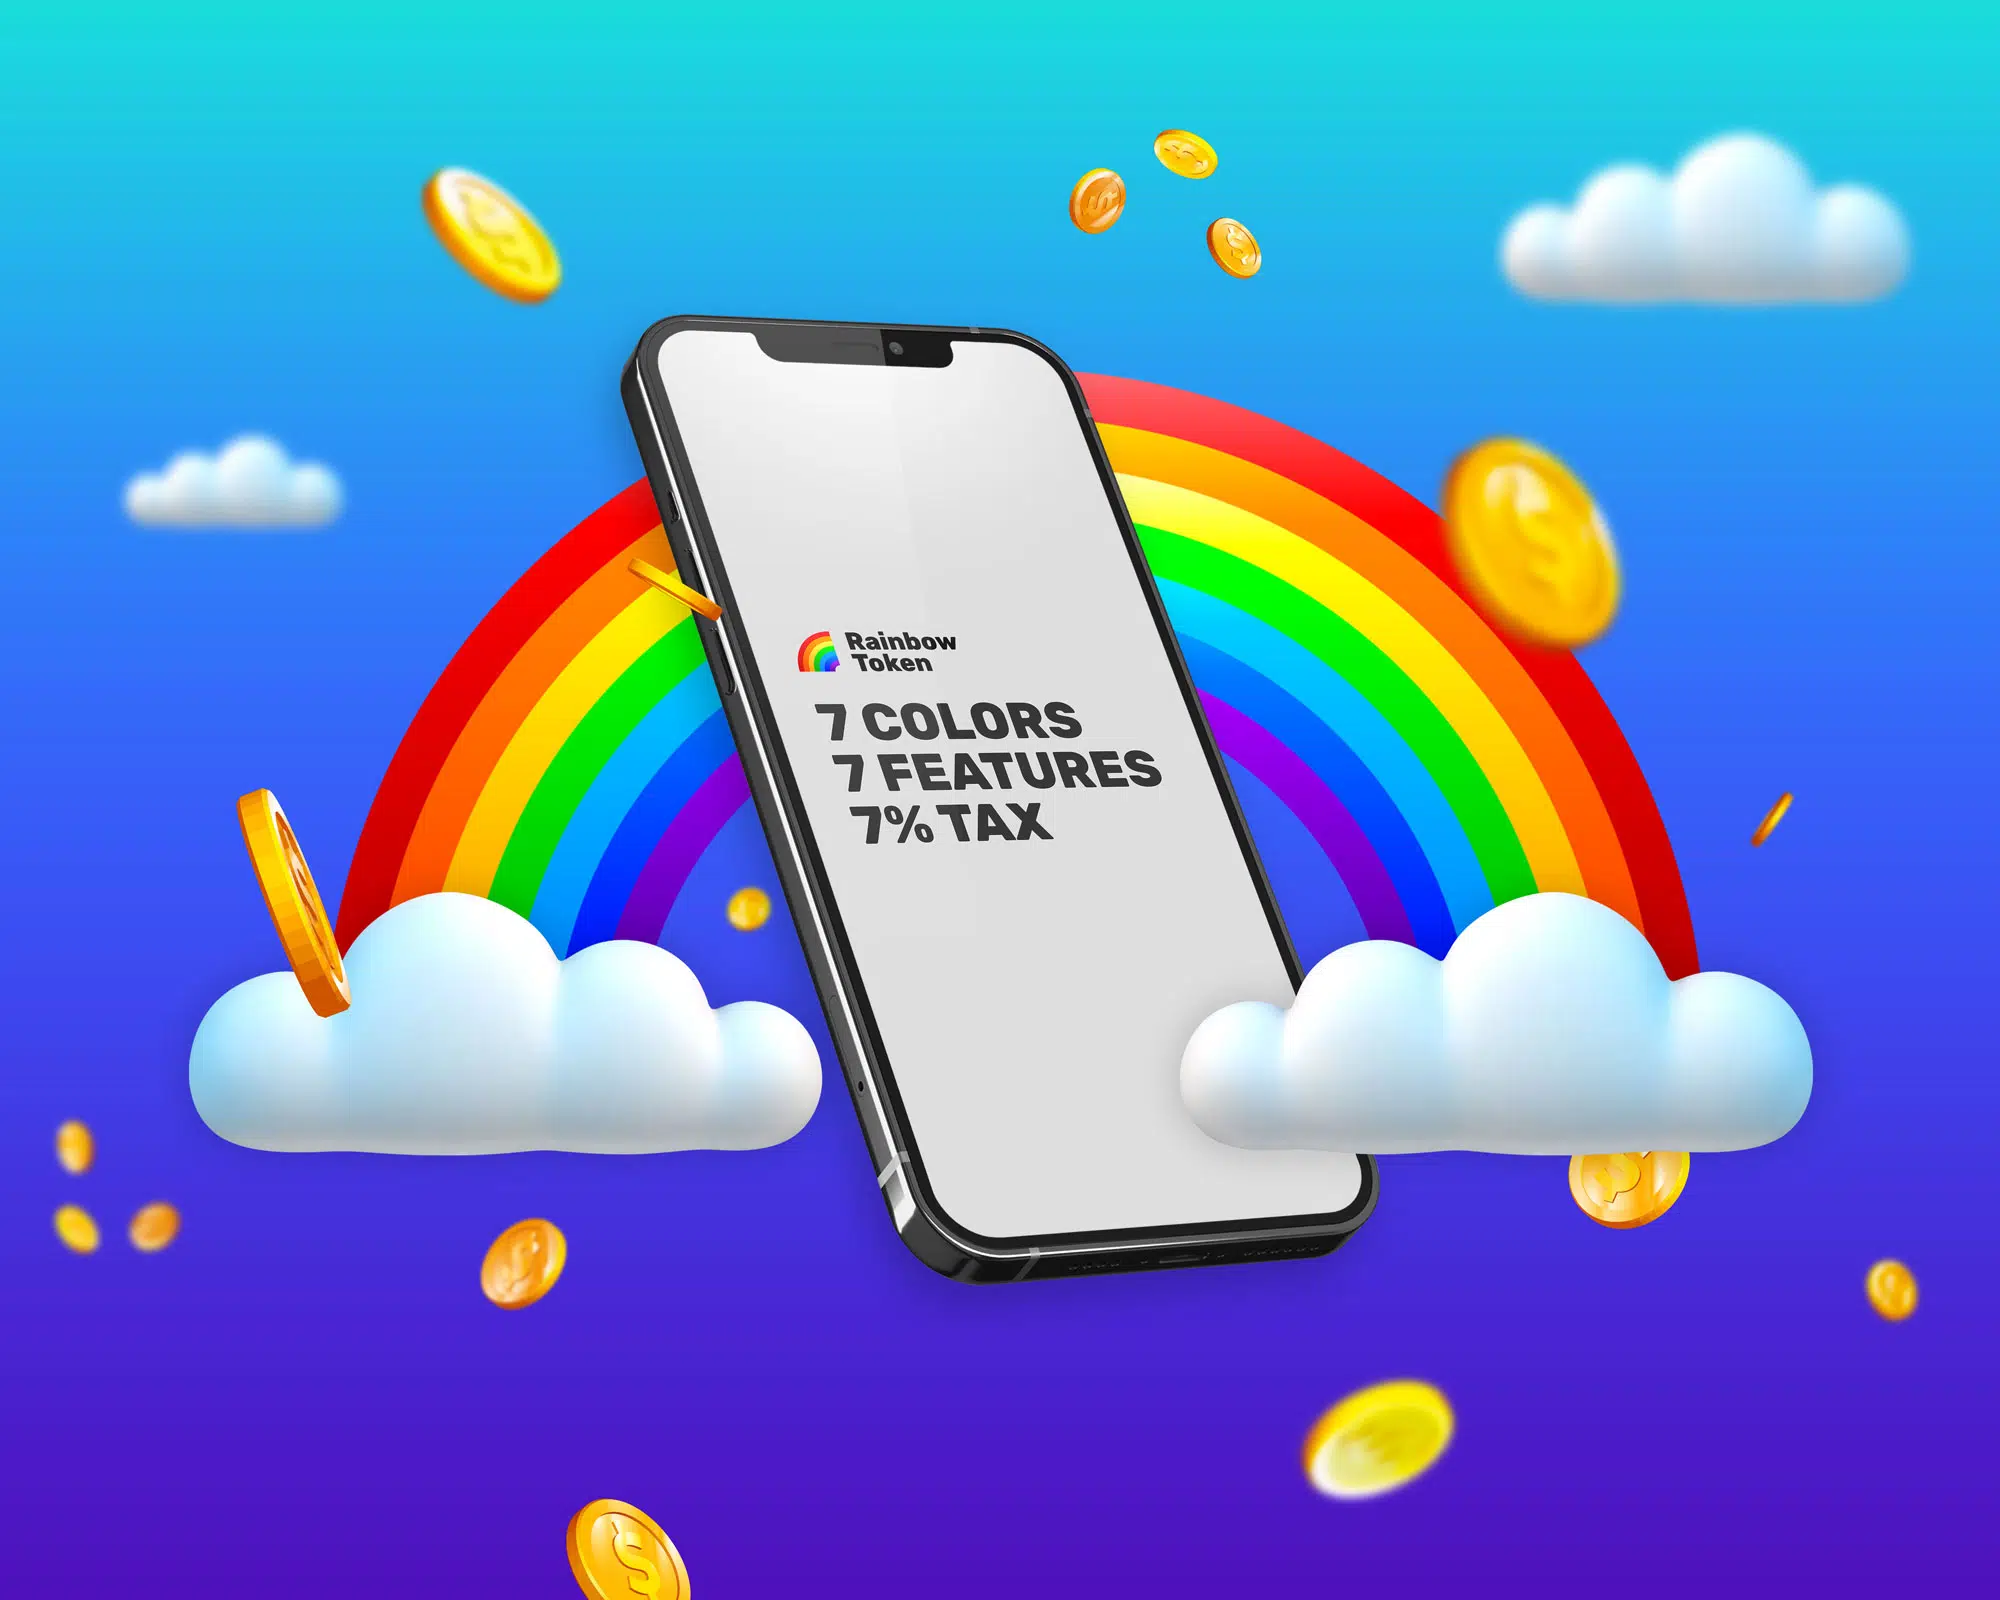 mambo agencia creativa rainbow token portada